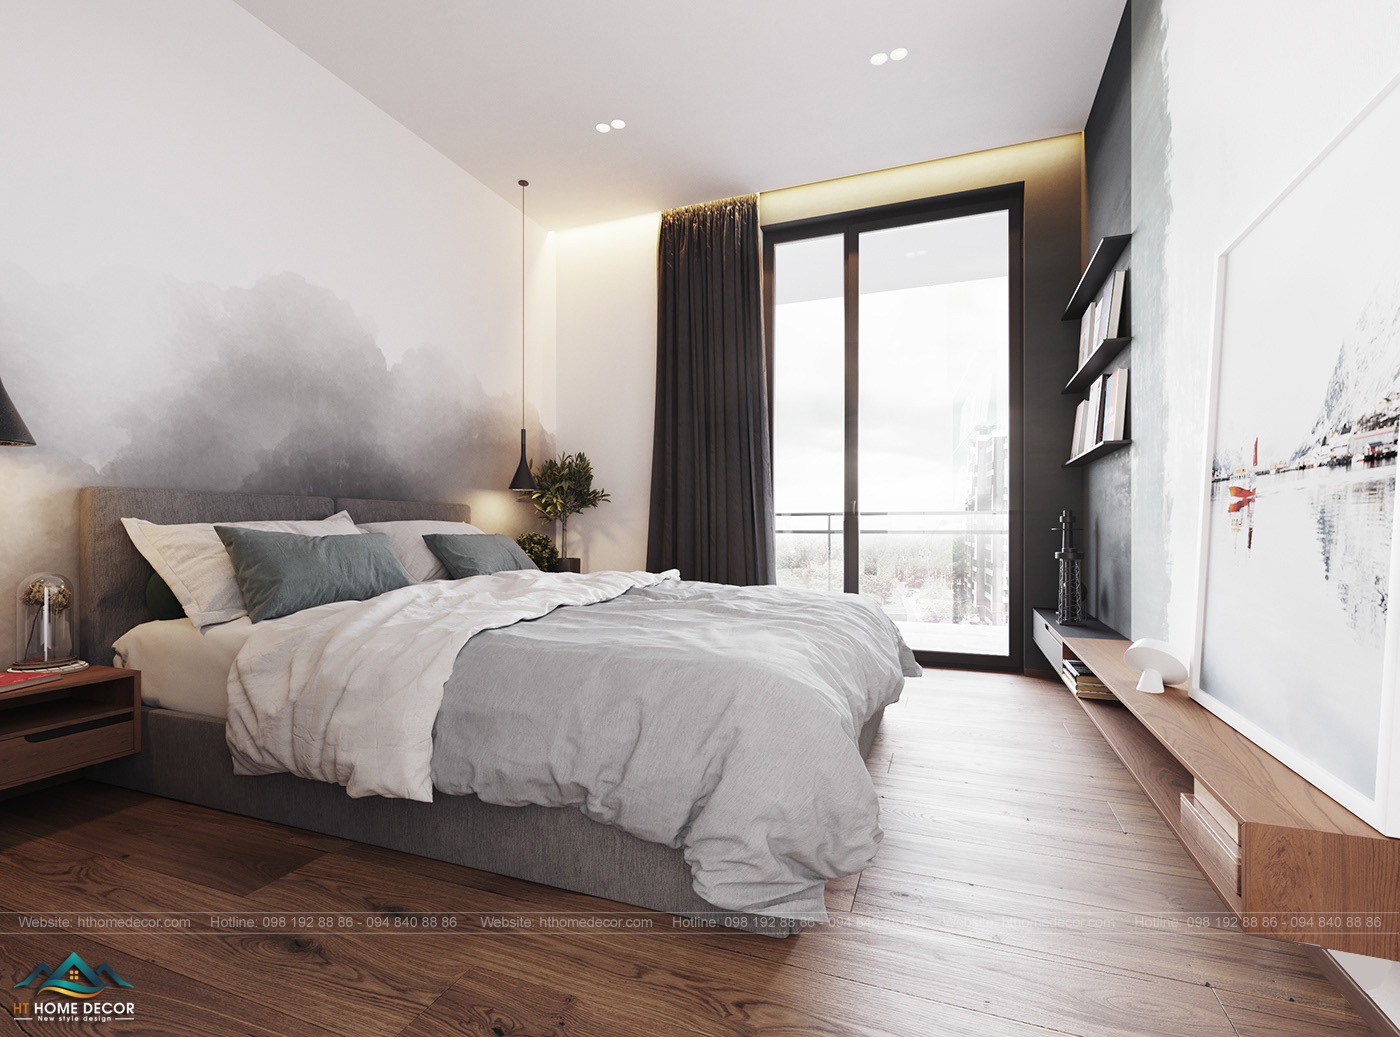 Căn phòng ngủ tối giản nội thất những vẫn đầy đủ cho nhu cầu sử dụng. Giường ngủ rộng đặt ở trung tâm sẽ mang giây phút nghỉ ngơi thư giãn cho gia đình.